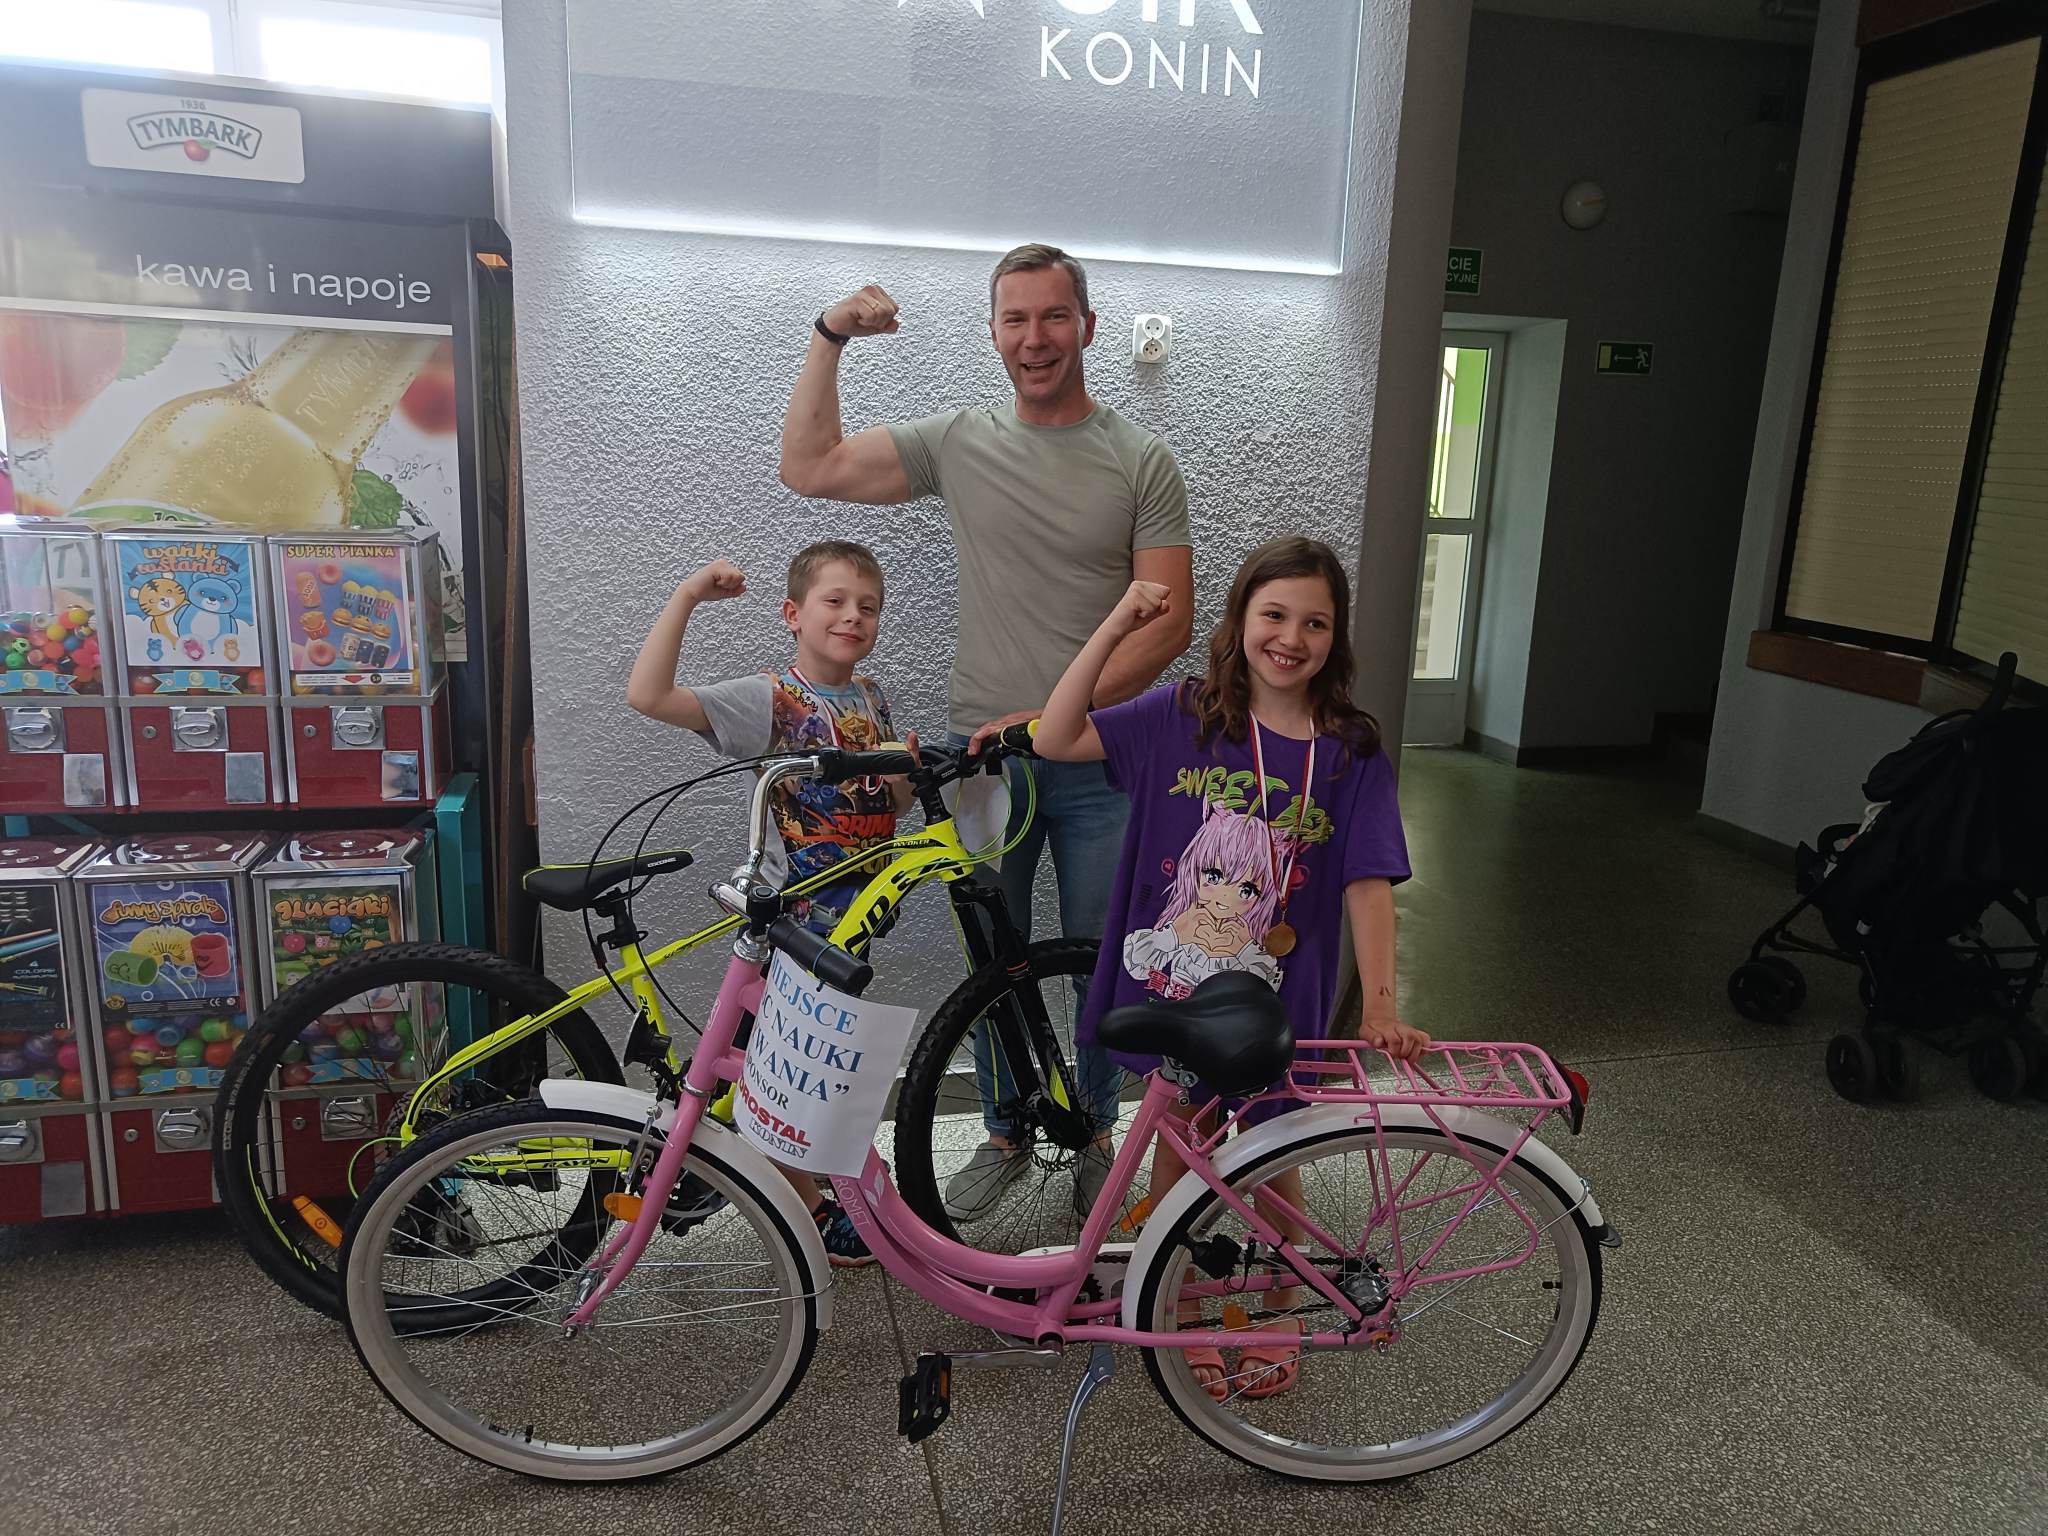 Dwoje dzieci pozuje do zdjęcia z trenerem i rowerami - nagrodami